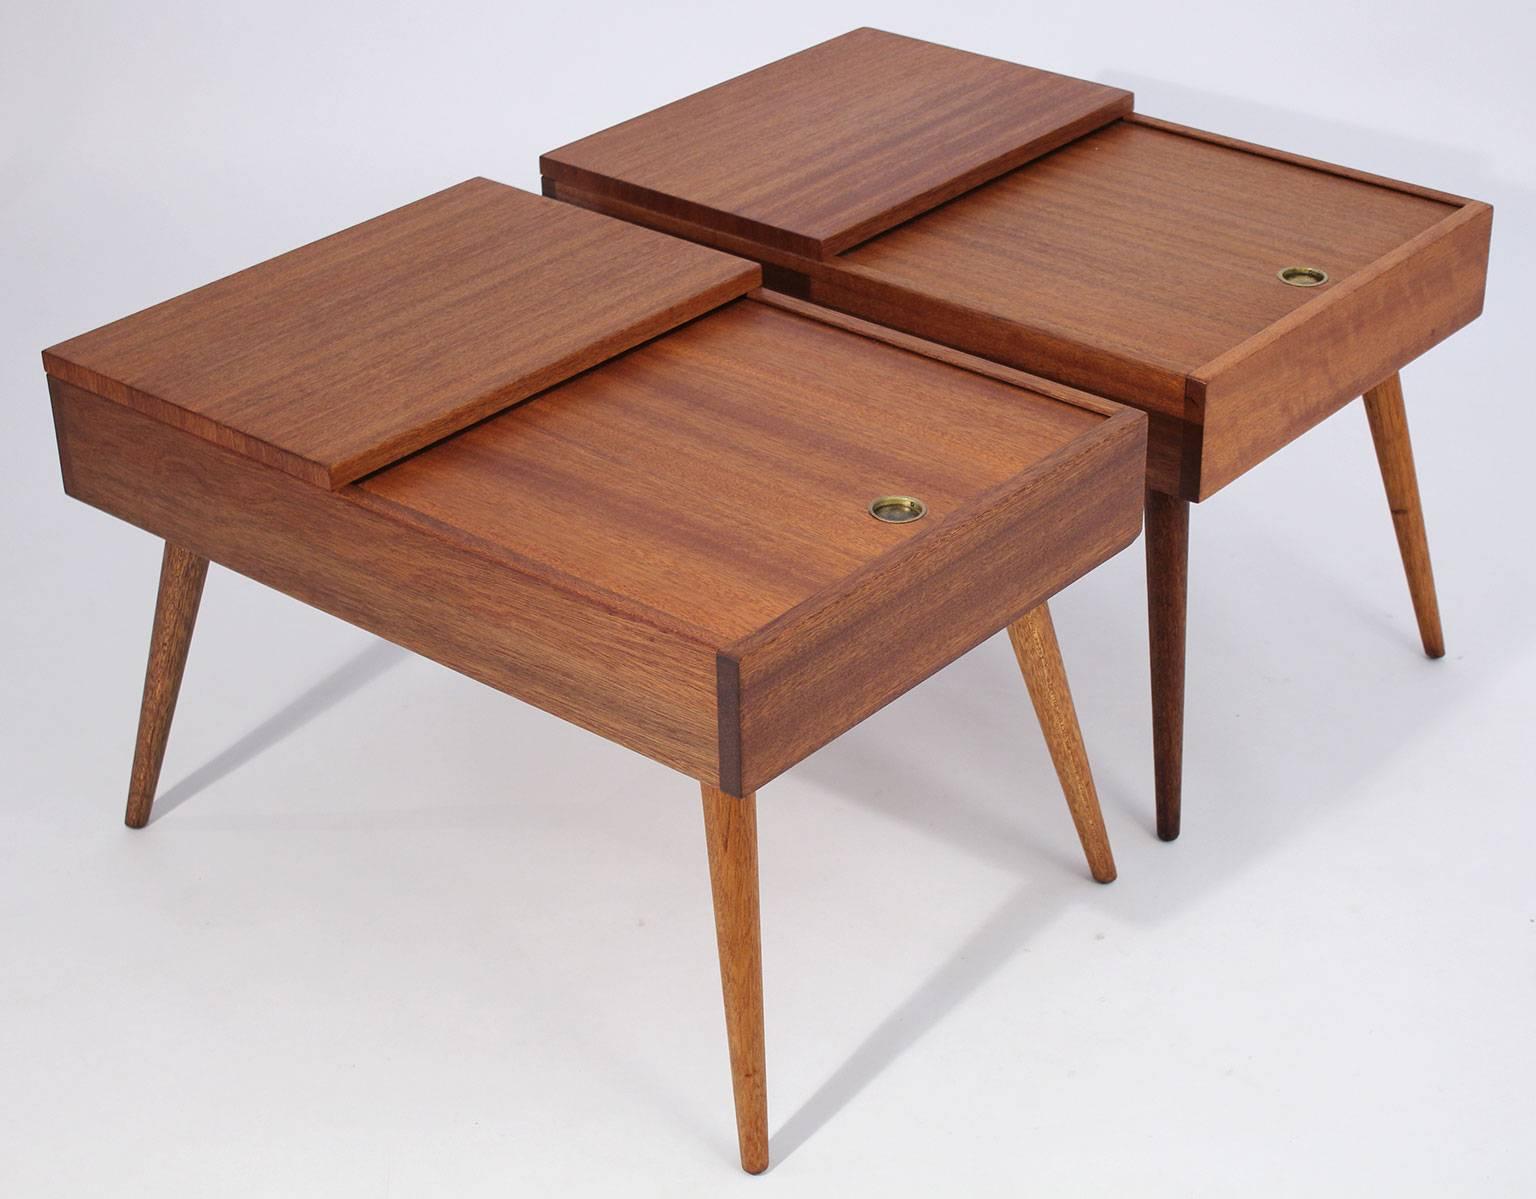 Frühe braune Saltman-Tische, entworfen von John Keal, ca. 1950er Jahre. Hergestellt aus schönem Mahagoniholz. Obere Schublade mit Gleitschienen zur Aufbewahrung. Das Holz ist vollständig in den Originalzustand zurückversetzt.